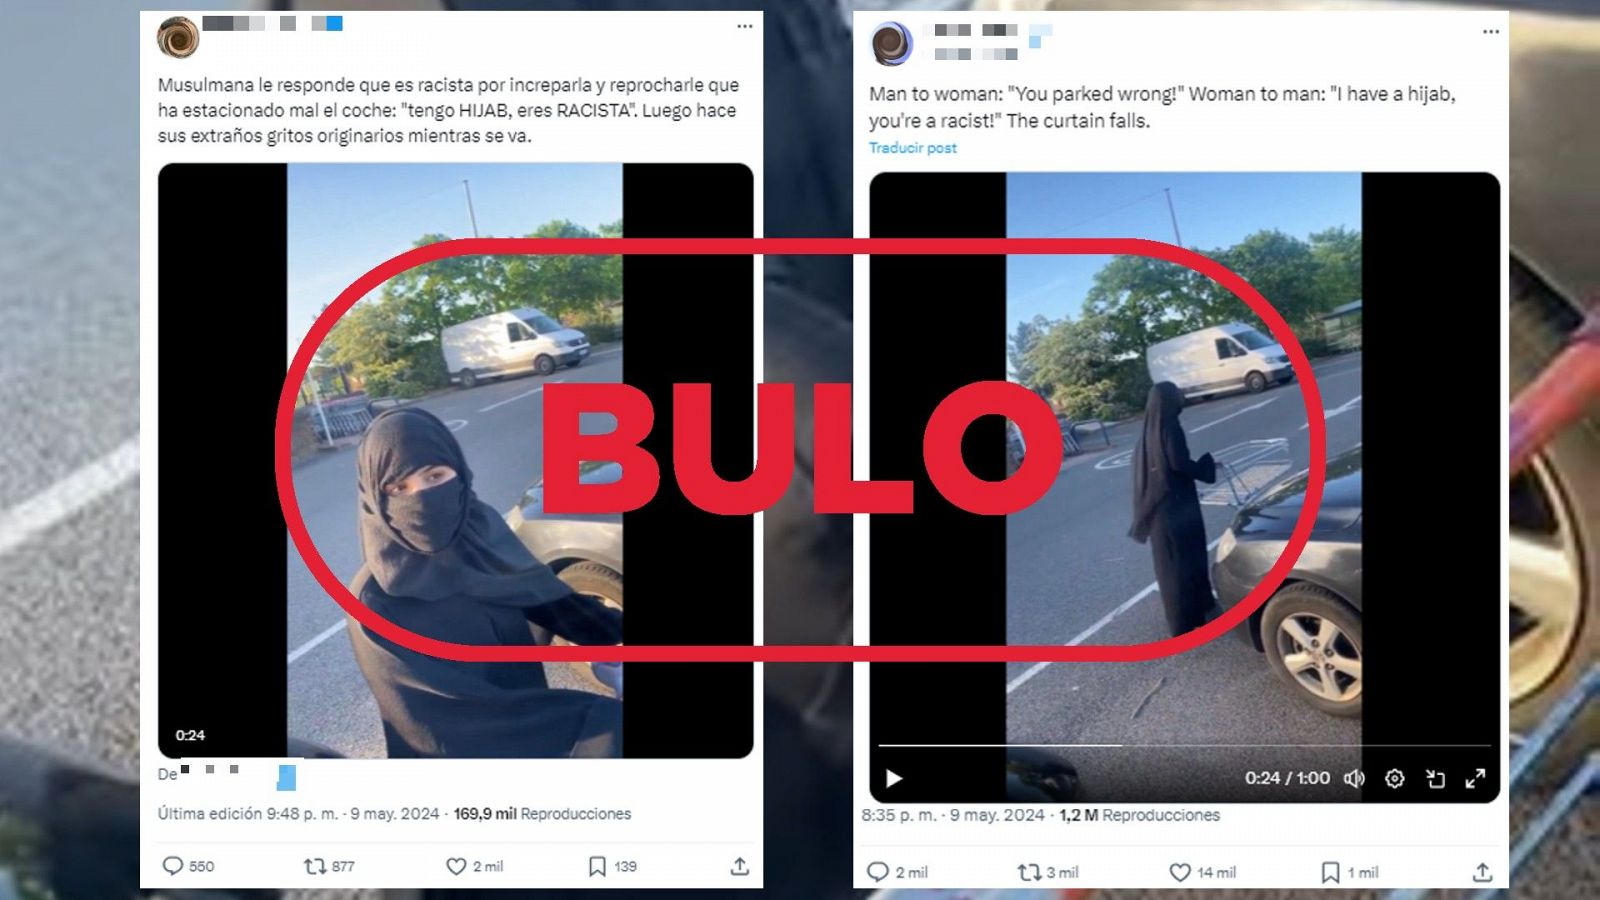 Este vídeo de una mujer llamando racista a un usuario en un parking no es real, es un bulo